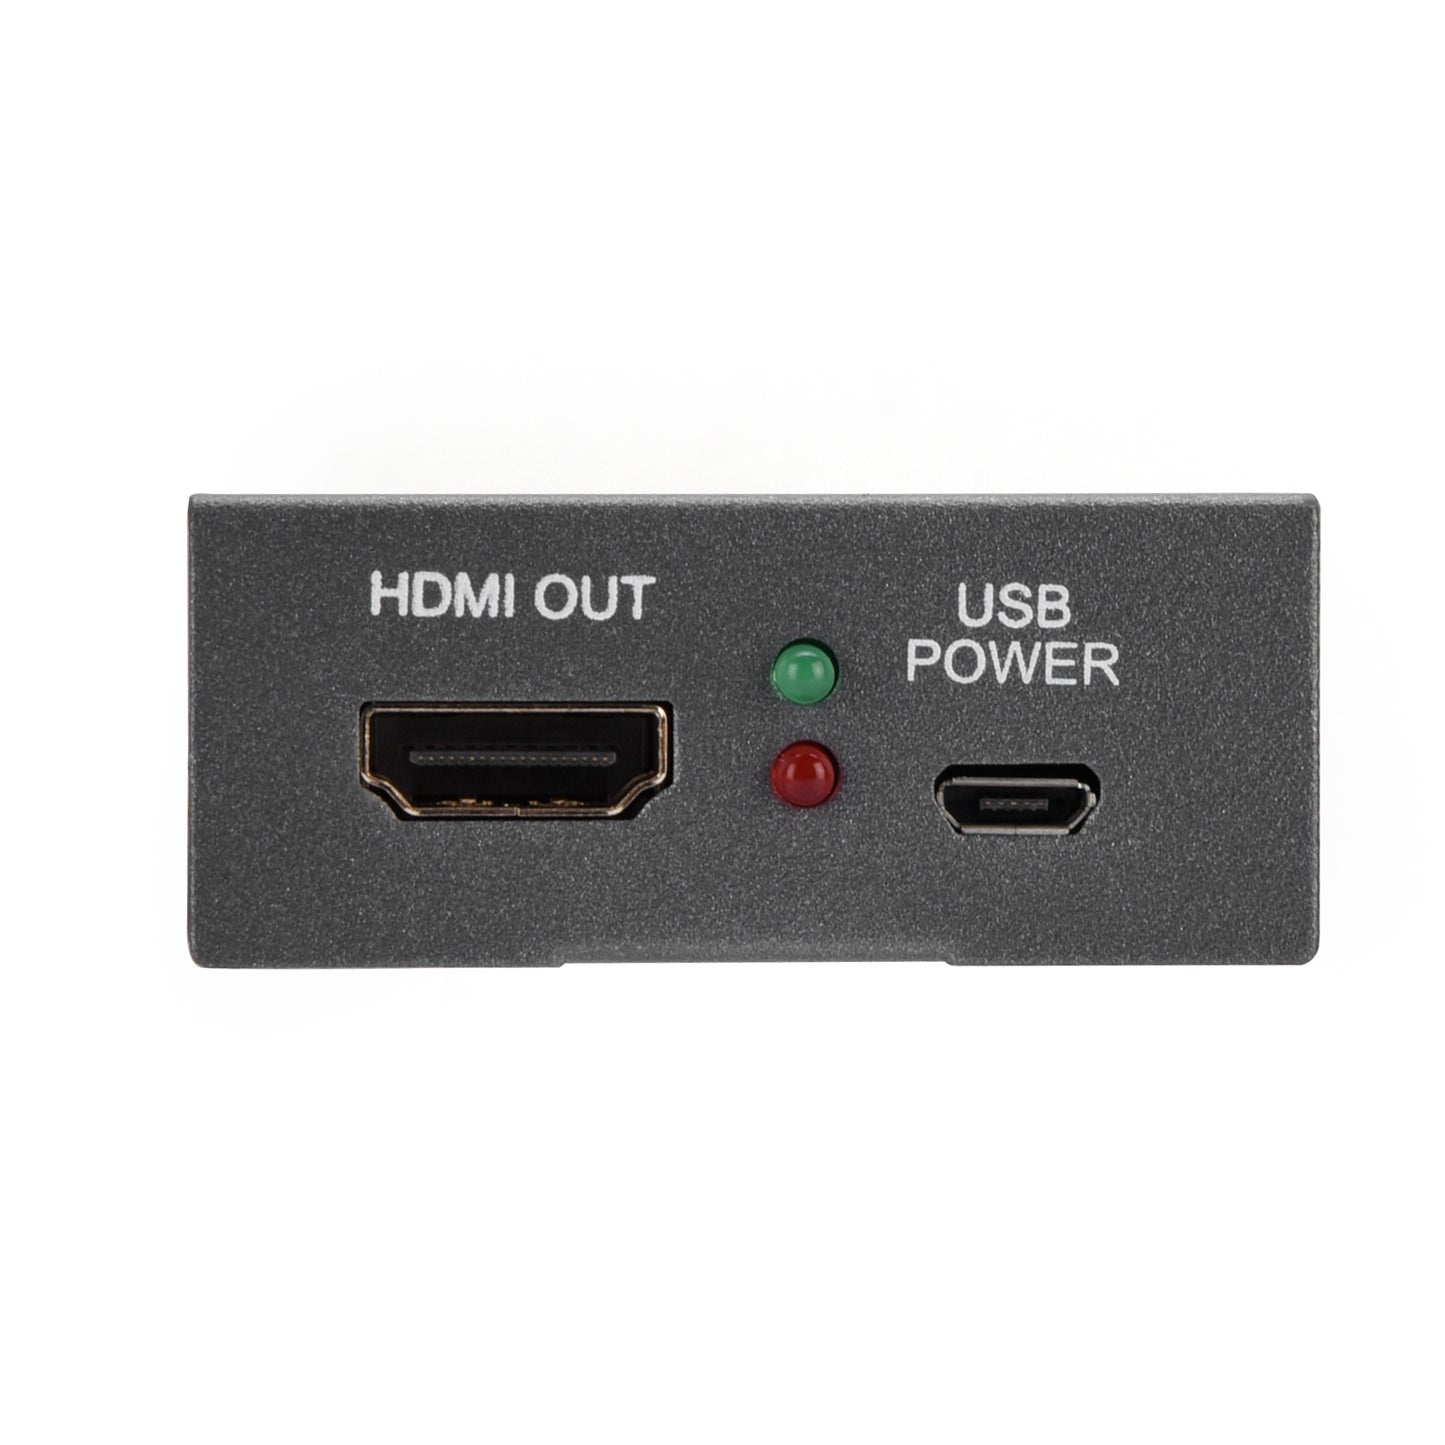 1 entrée SDI vers 2 sorties HDMI + SDI Mini convertisseur audio vidéo HD